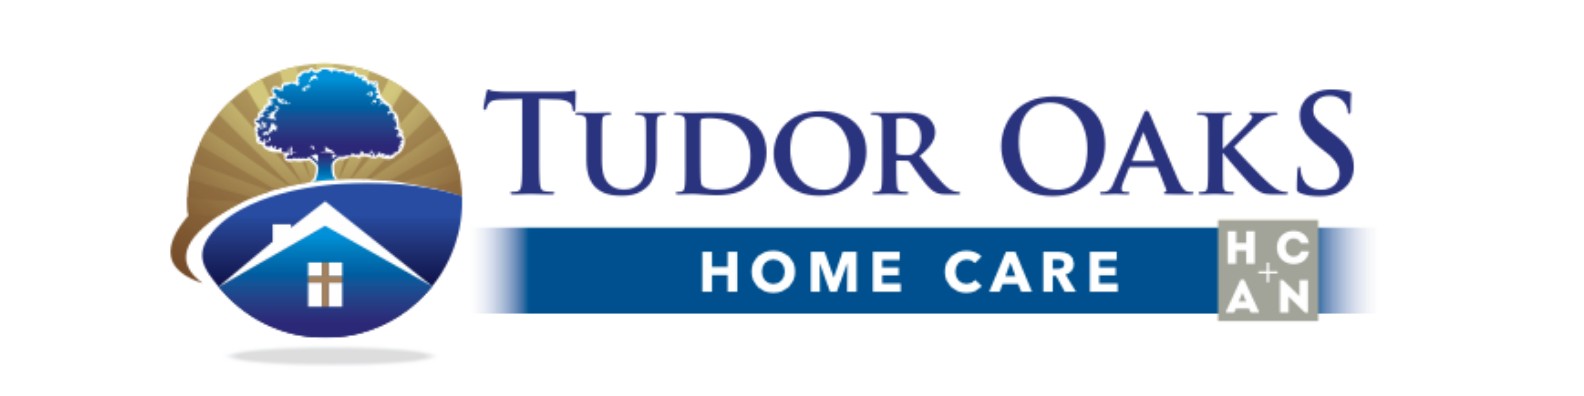 Tudor Oaks Home Care